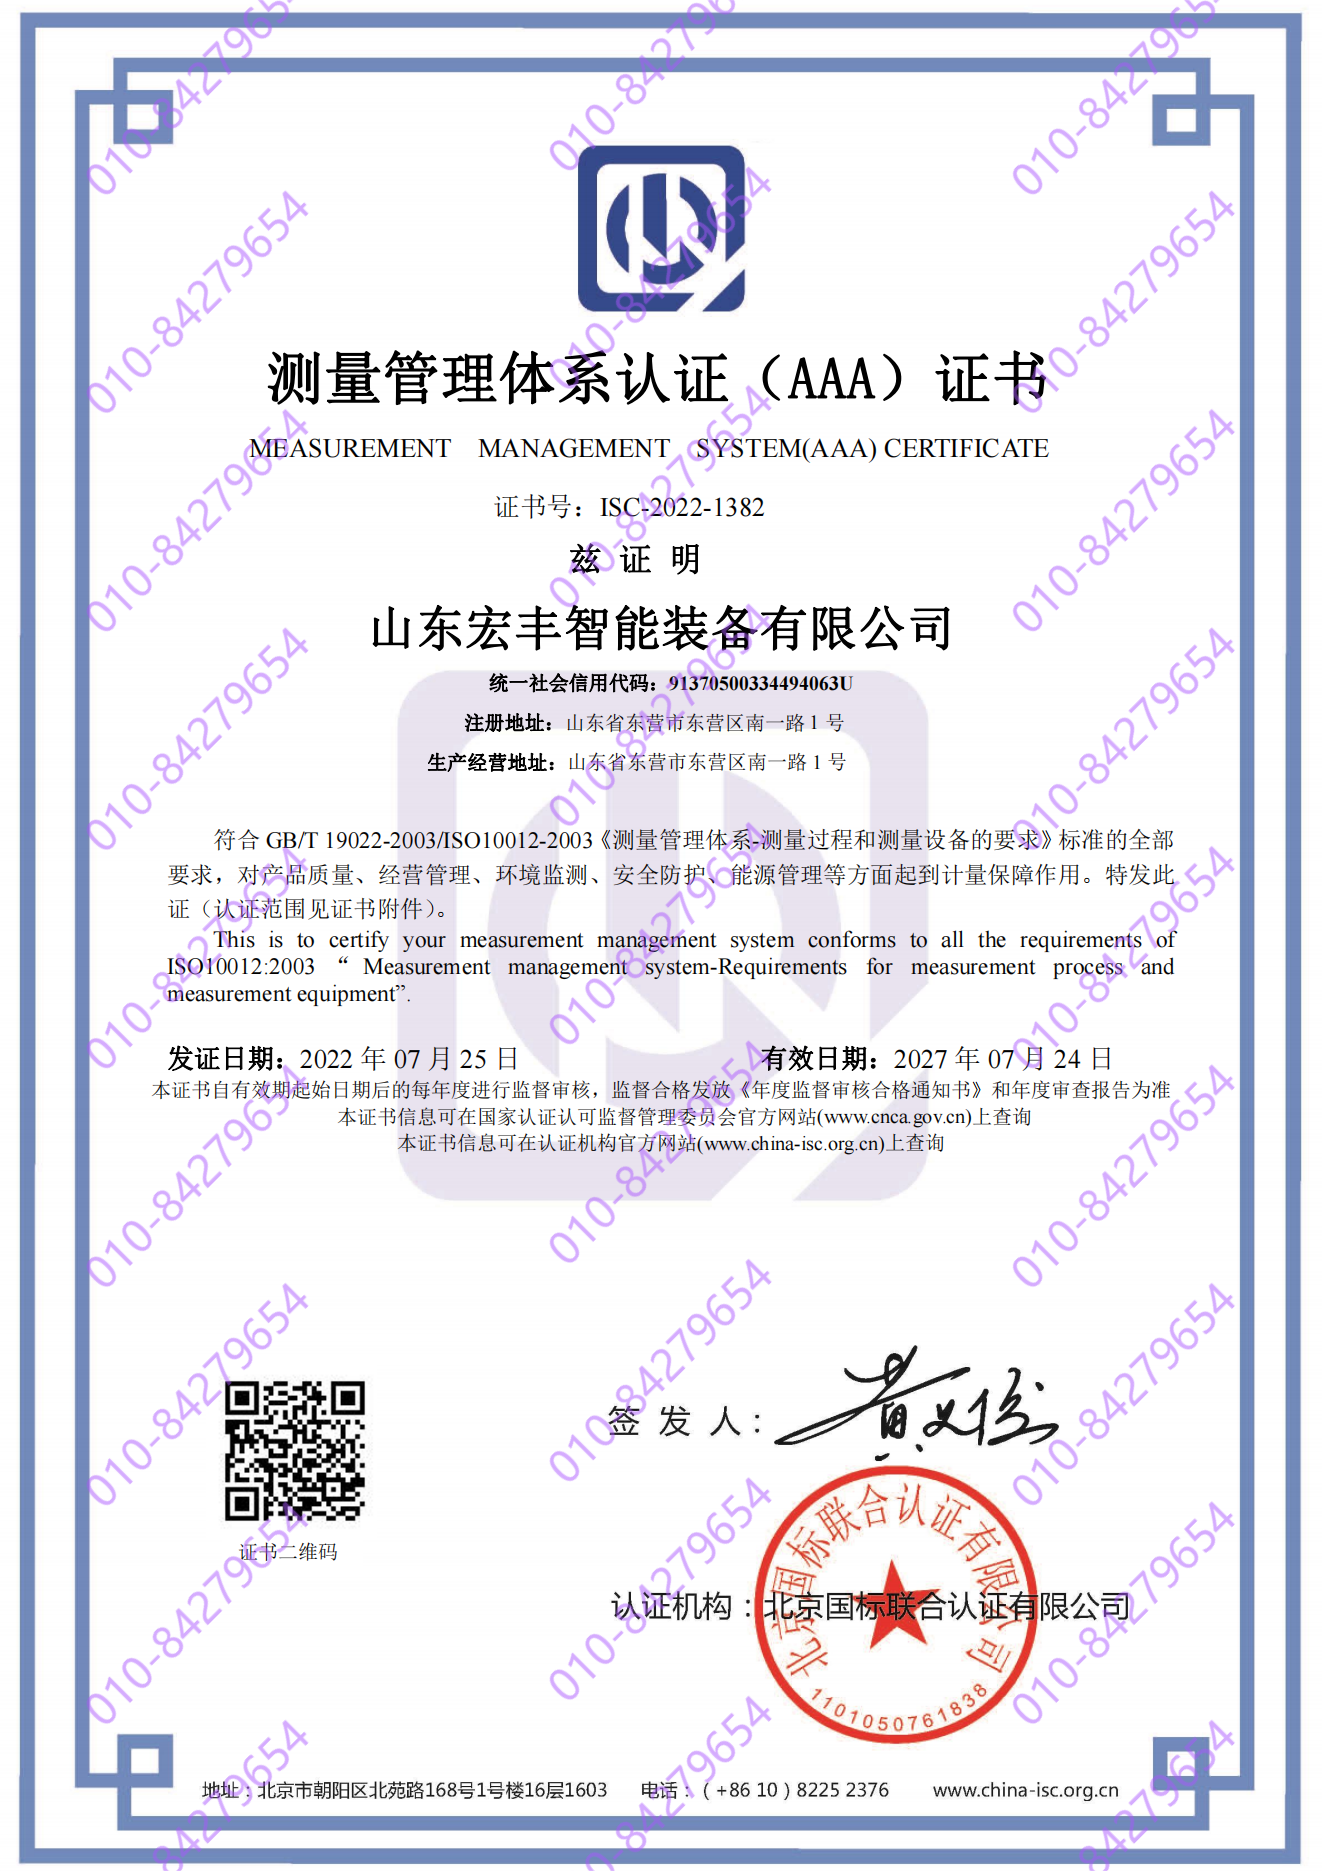 山东宏丰智能装备有限公司 喜获“测量管理体系认证（AAA）证书”